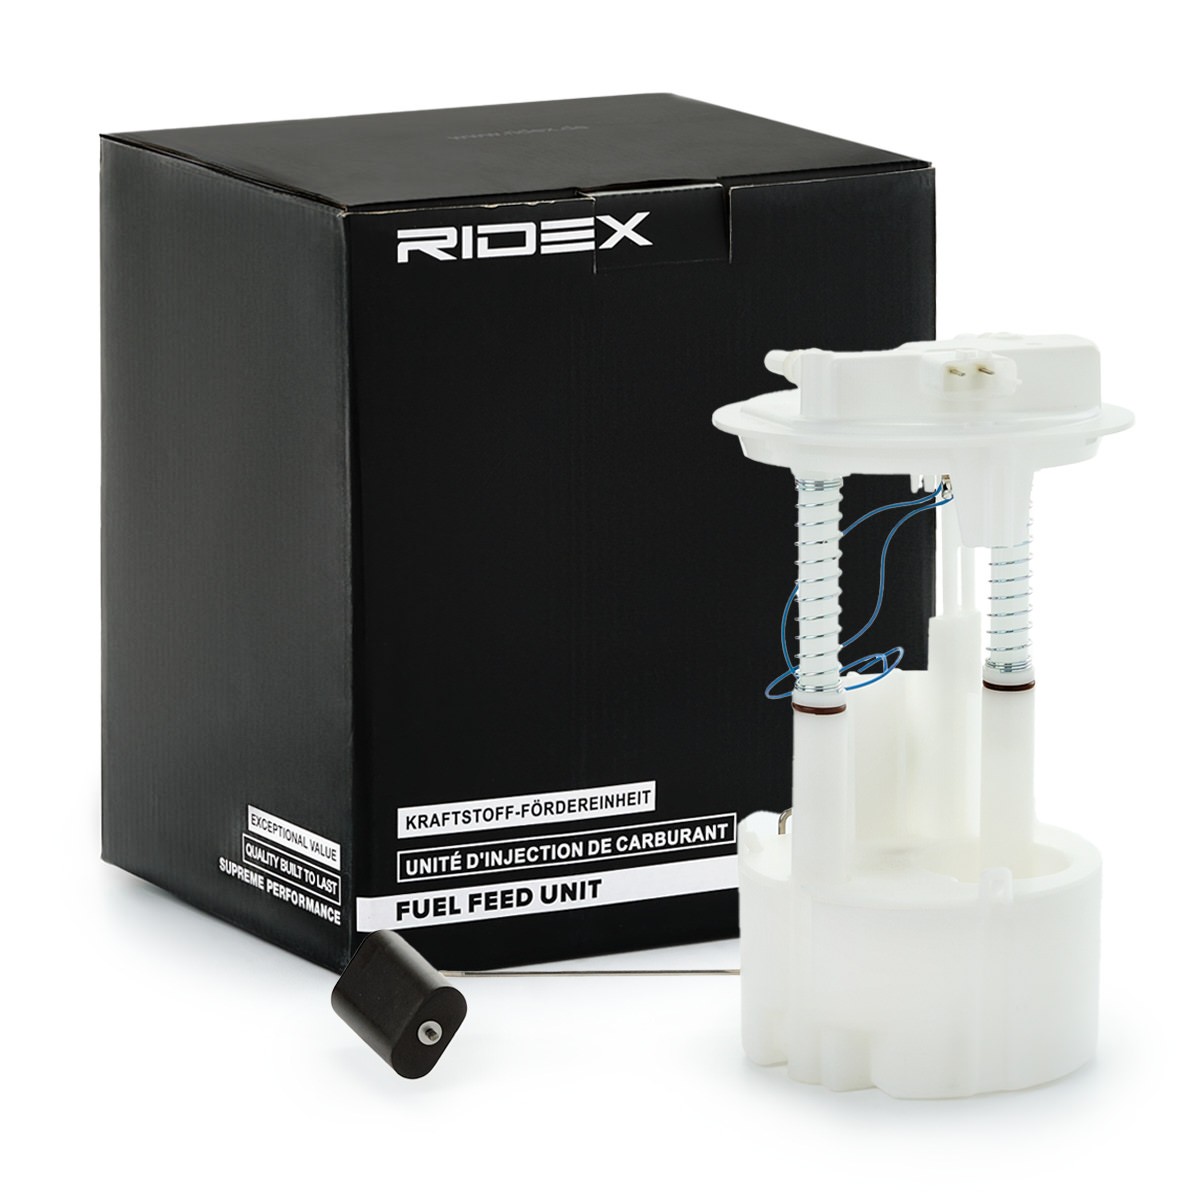 RIDEX 1382F0550 Fuel feed unit 170409U21C